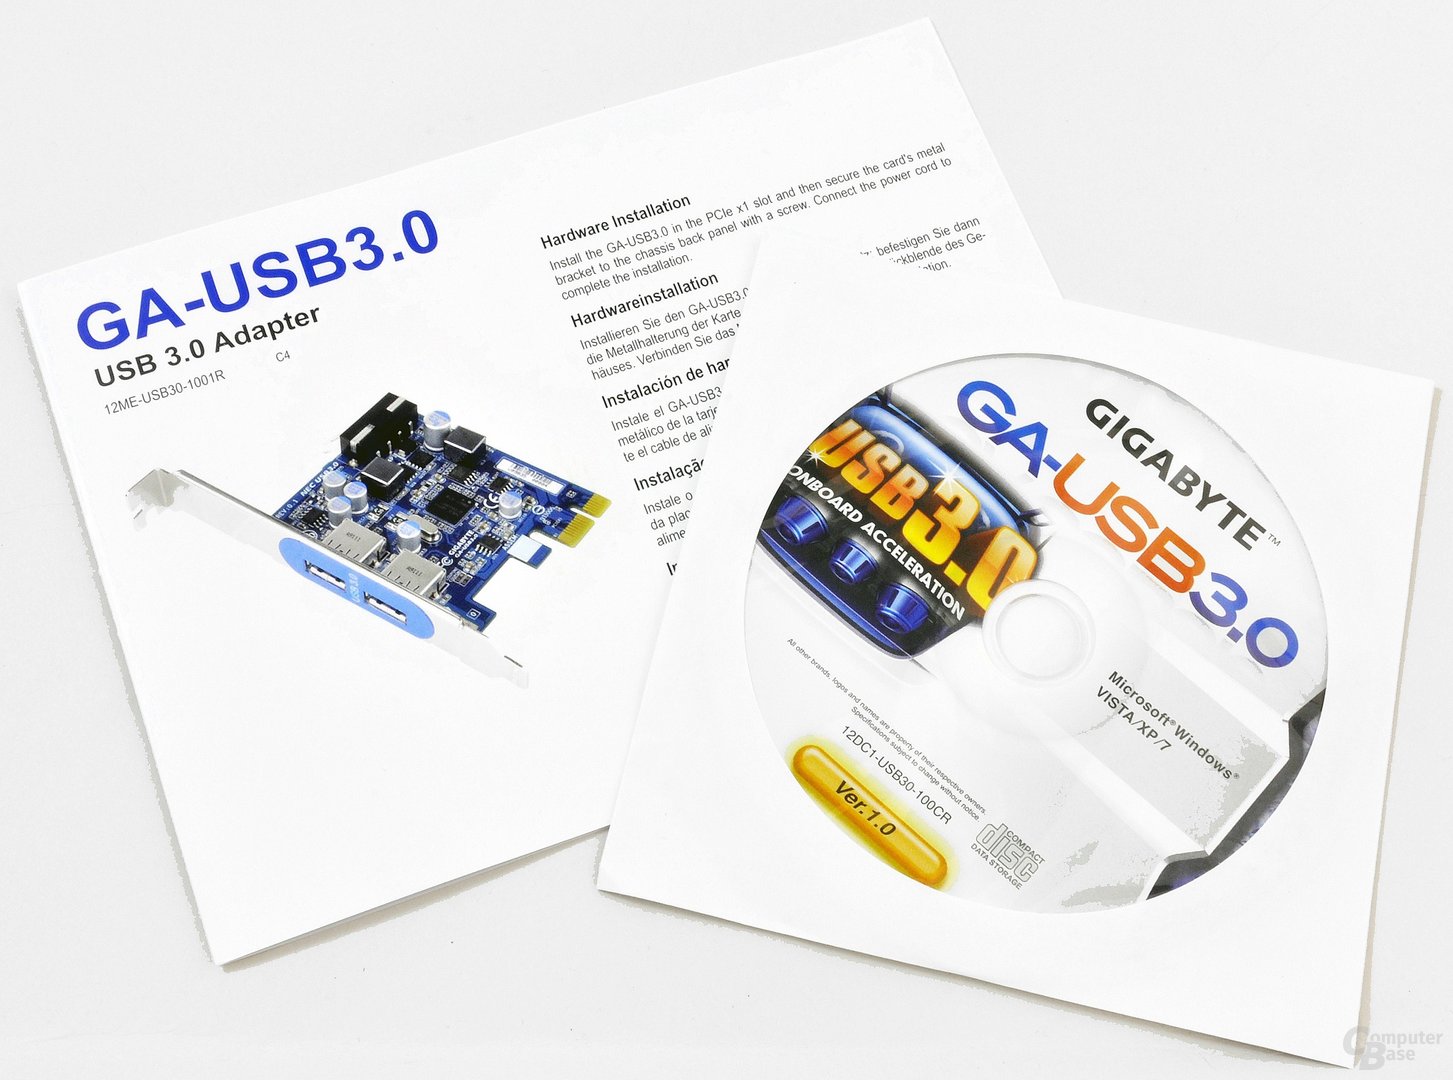 Gigabyte GA-USB 3.0